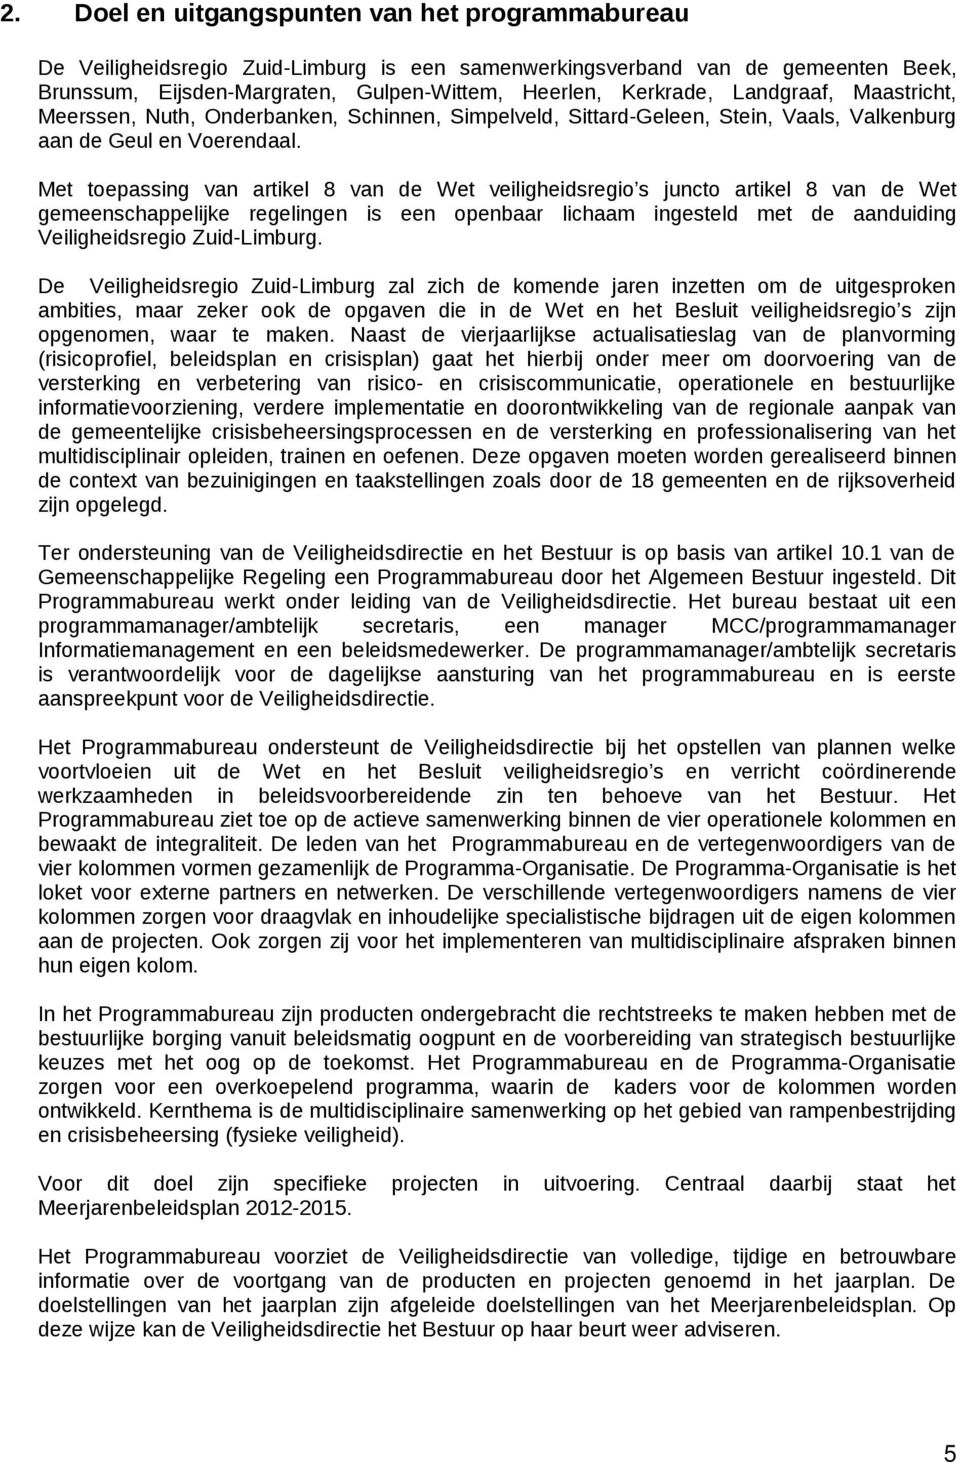 Met toepassing van artikel 8 van de Wet veiligheidsregio s juncto artikel 8 van de Wet gemeenschappelijke regelingen is een openbaar lichaam ingesteld met de aanduiding Veiligheidsregio Zuid-Limburg.